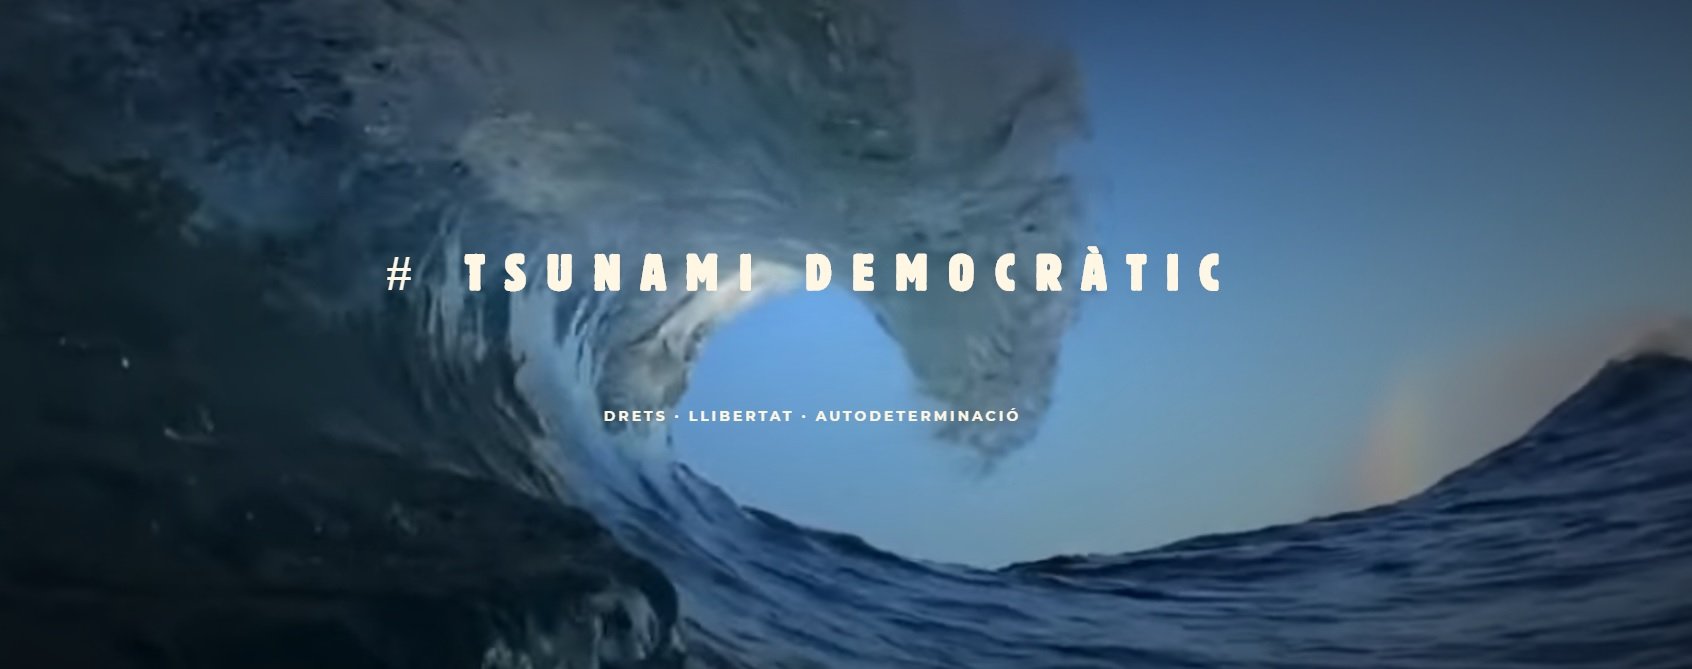 La Guàrdia Civil intenta bloquejar (sense èxit) el web del Tsunami Democràtic